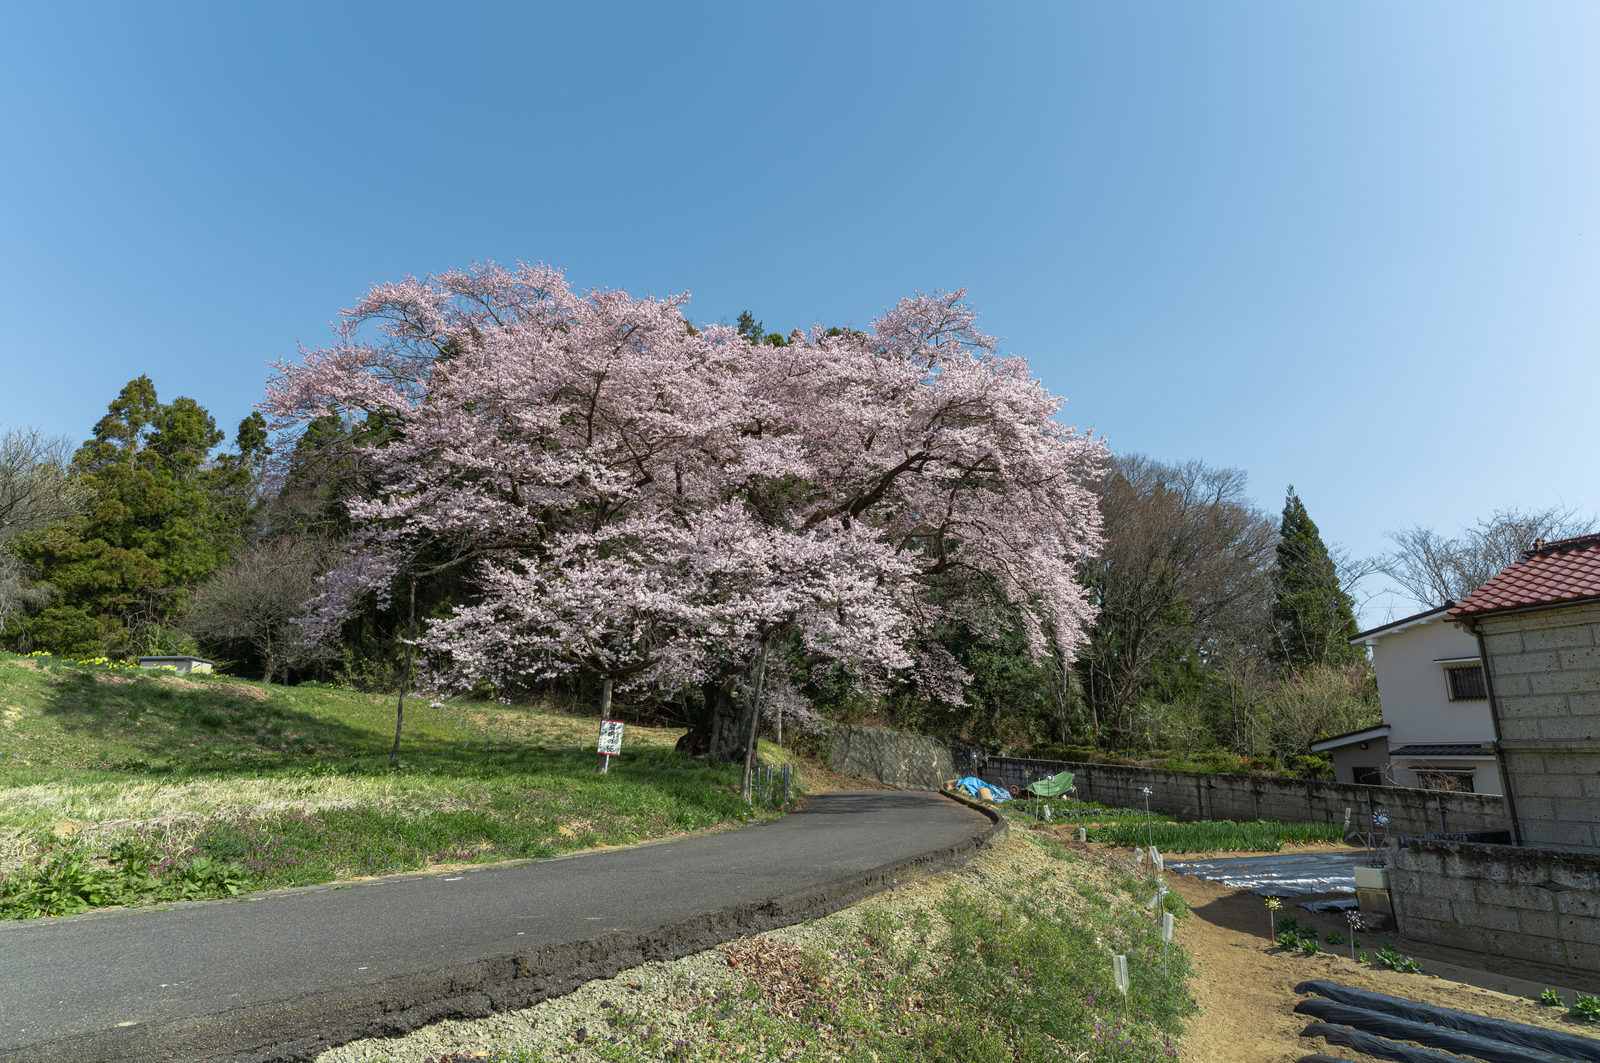 「市街地に咲く一本桜「弥明の桜」 | フリー素材のぱくたそ」の写真